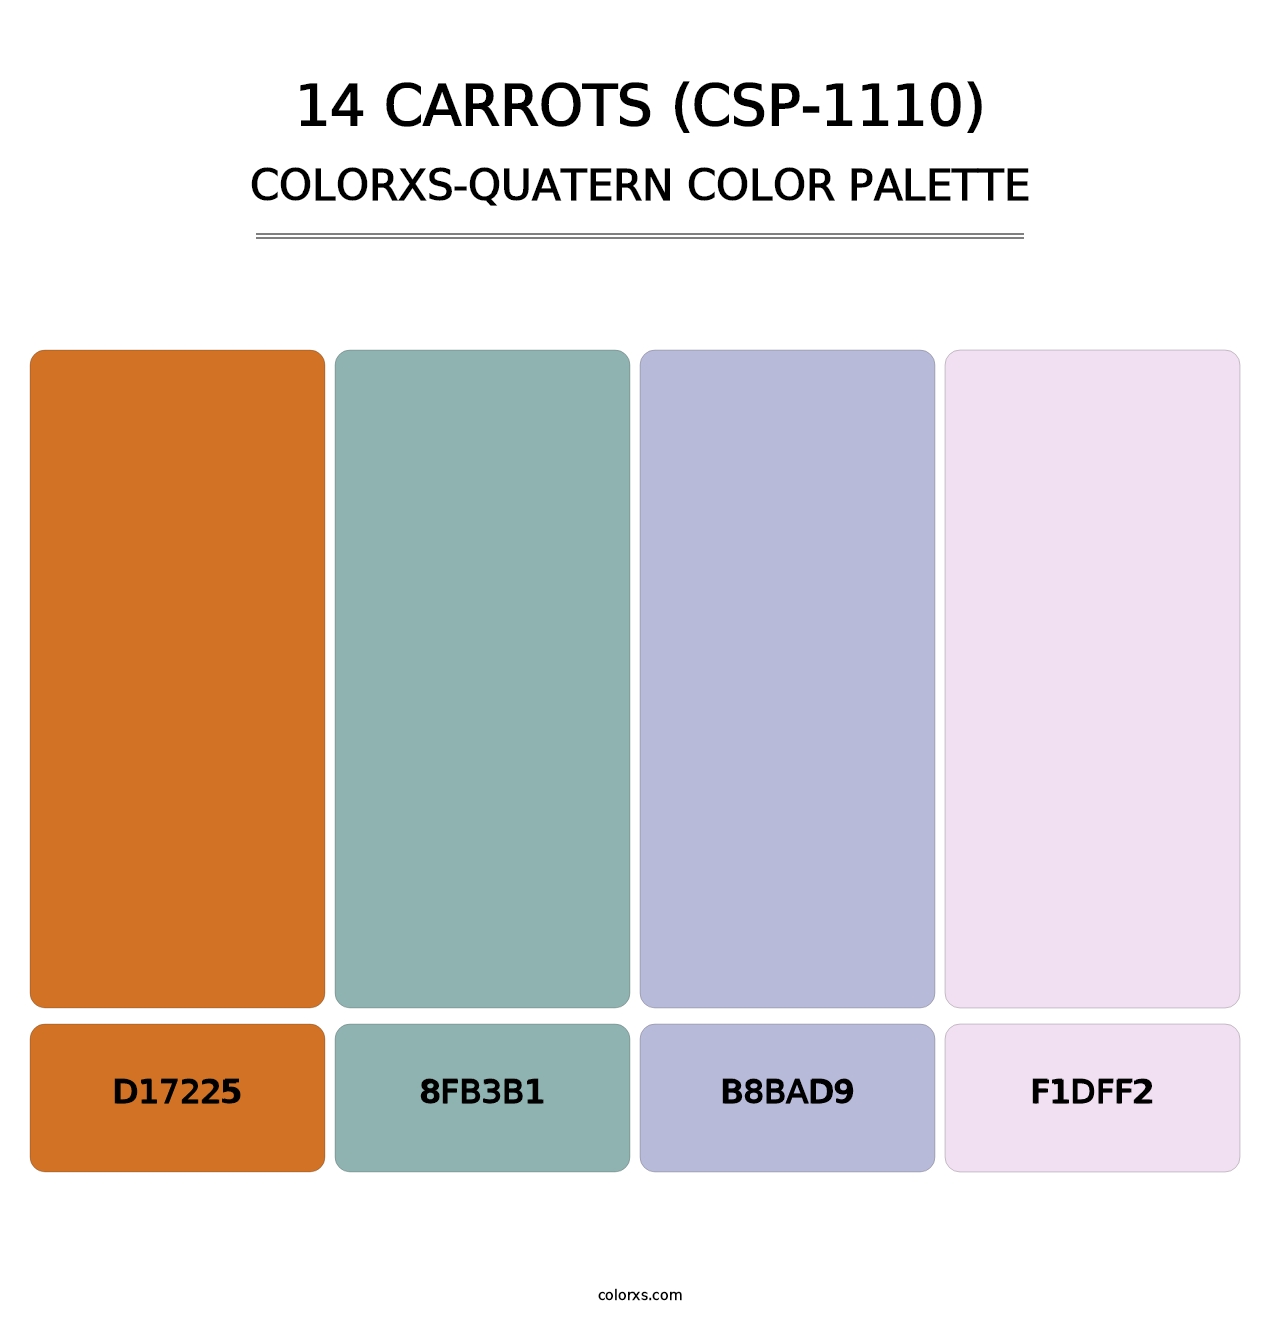 14 Carrots (CSP-1110) - Colorxs Quatern Palette